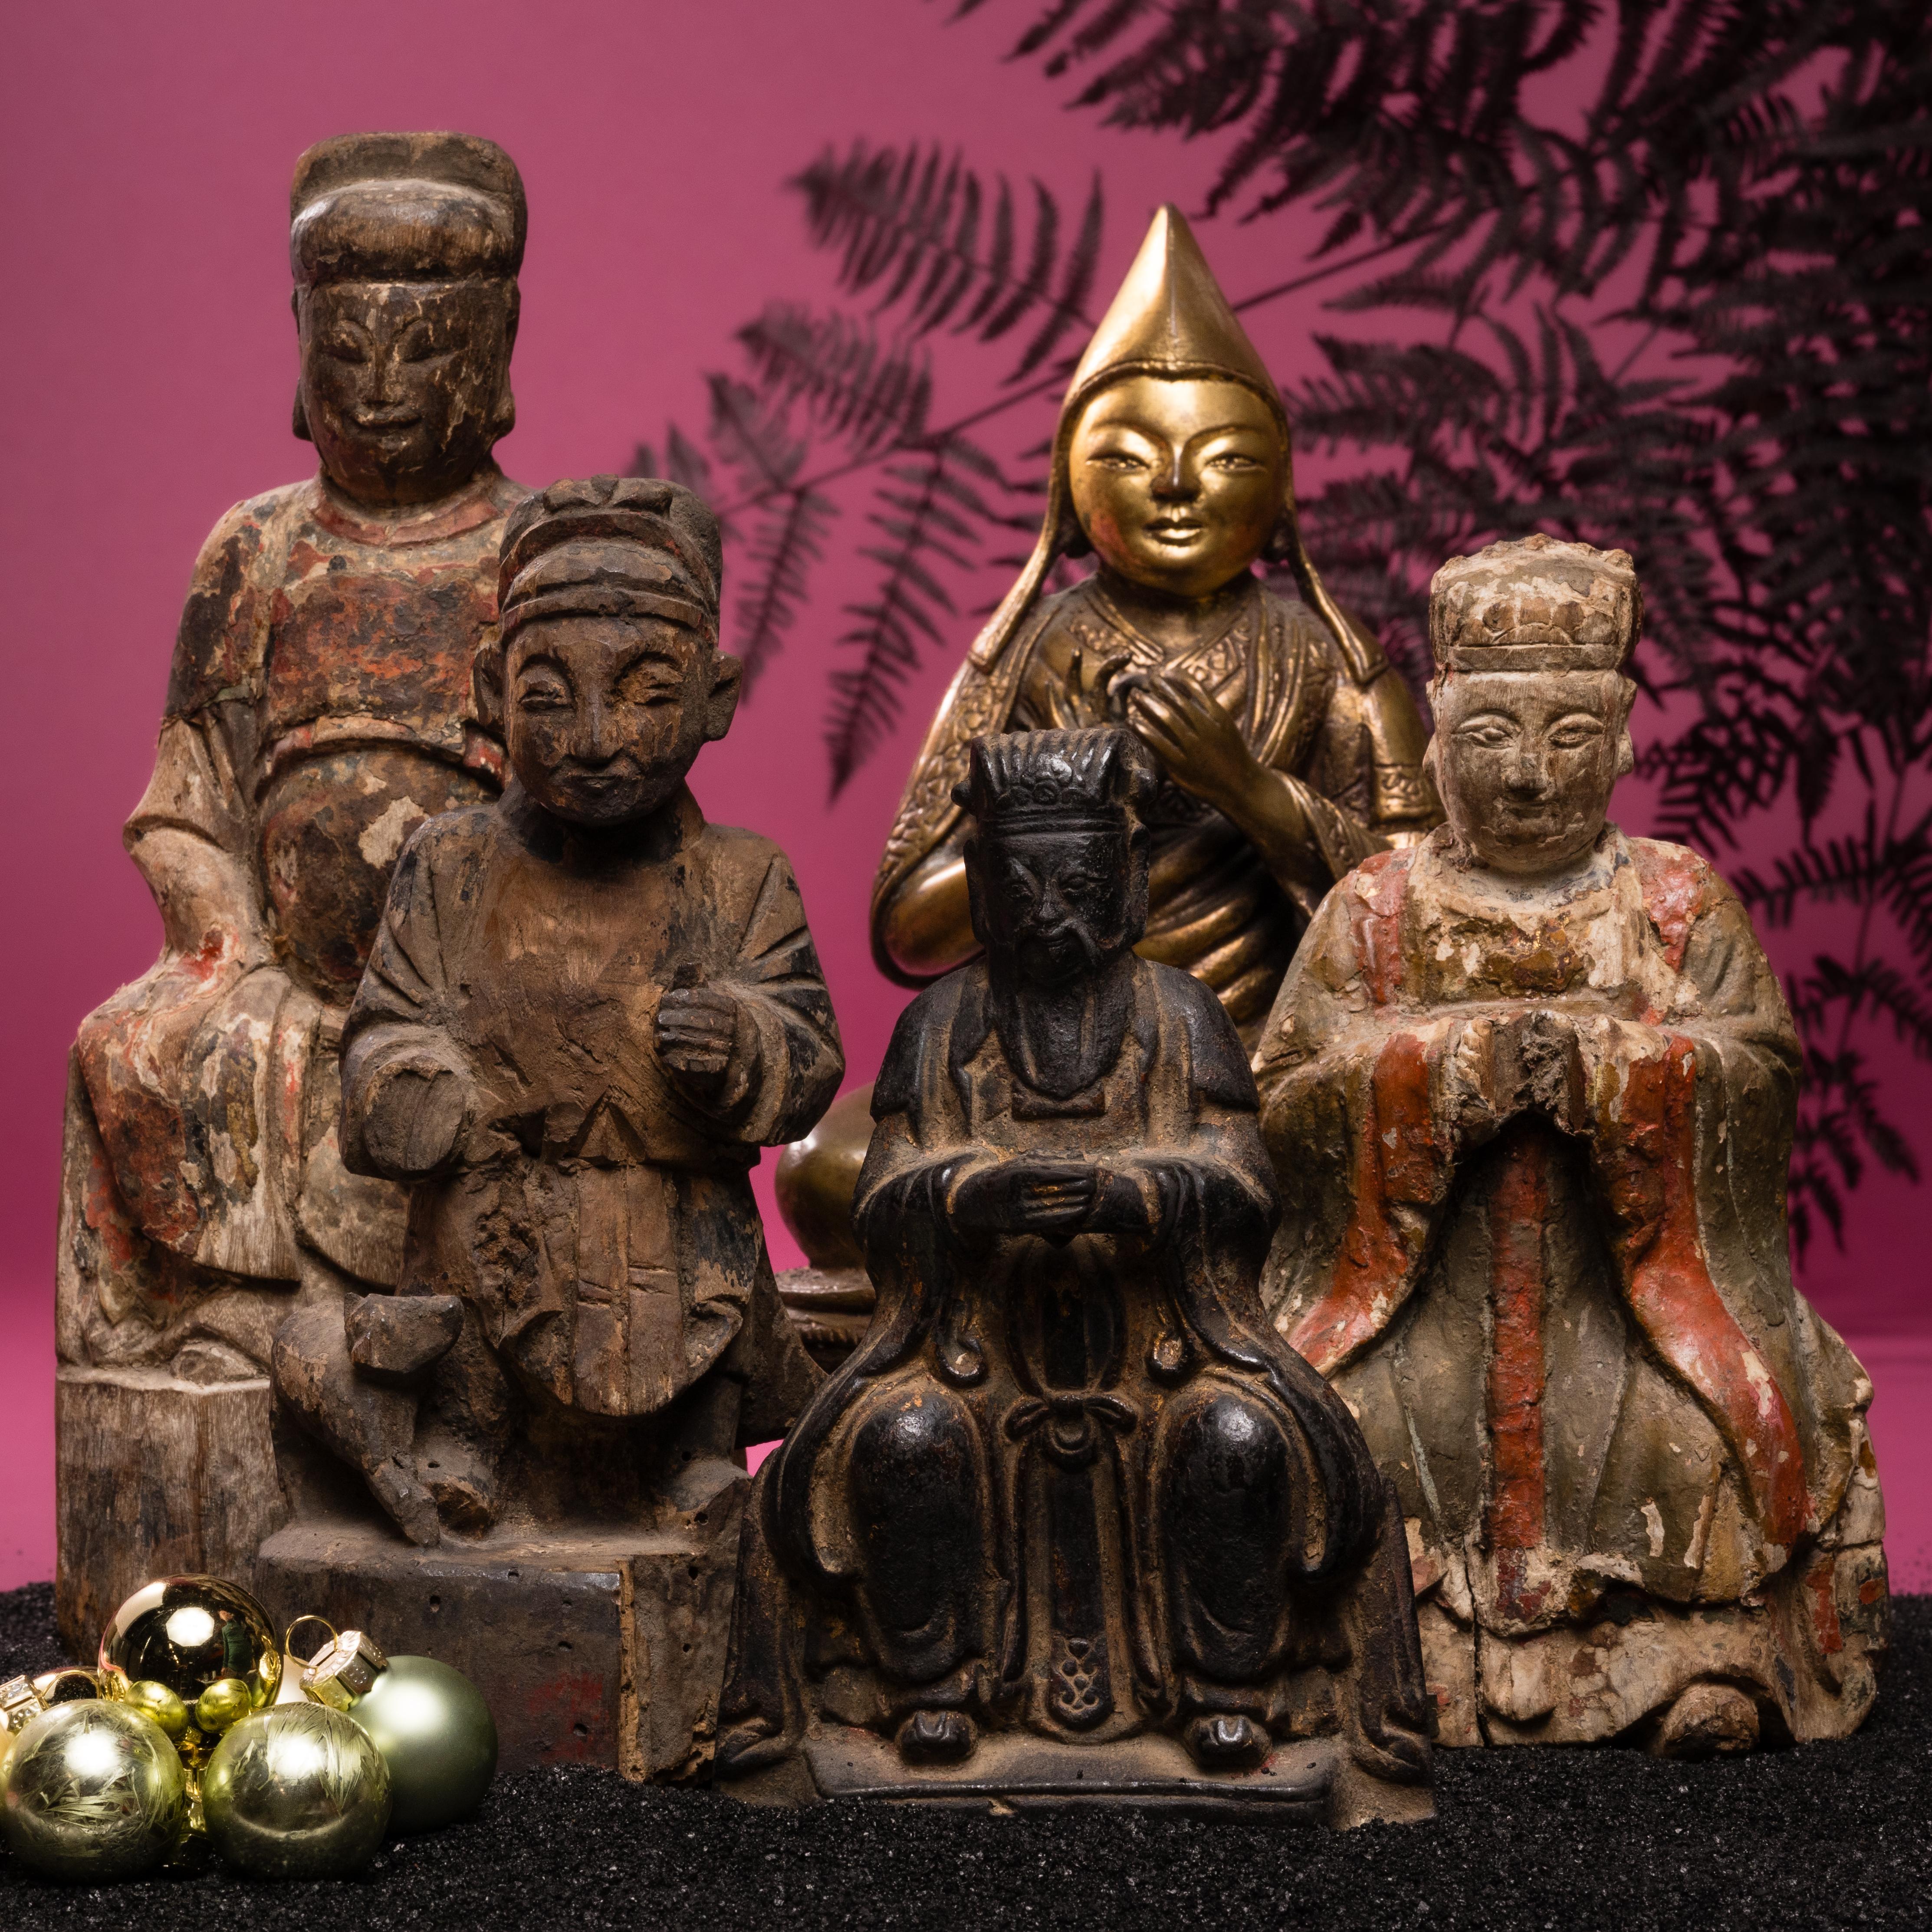 Diese geschnitzte Holzfigur aus dem 18. Jahrhundert stellt wahrscheinlich den Jadekaiser dar, den obersten Herrscher über Himmel und Erde in der chinesischen Folklore und taoistischen Mythologie. Der Jadekaiser, Herrscher über alle Gottheiten und